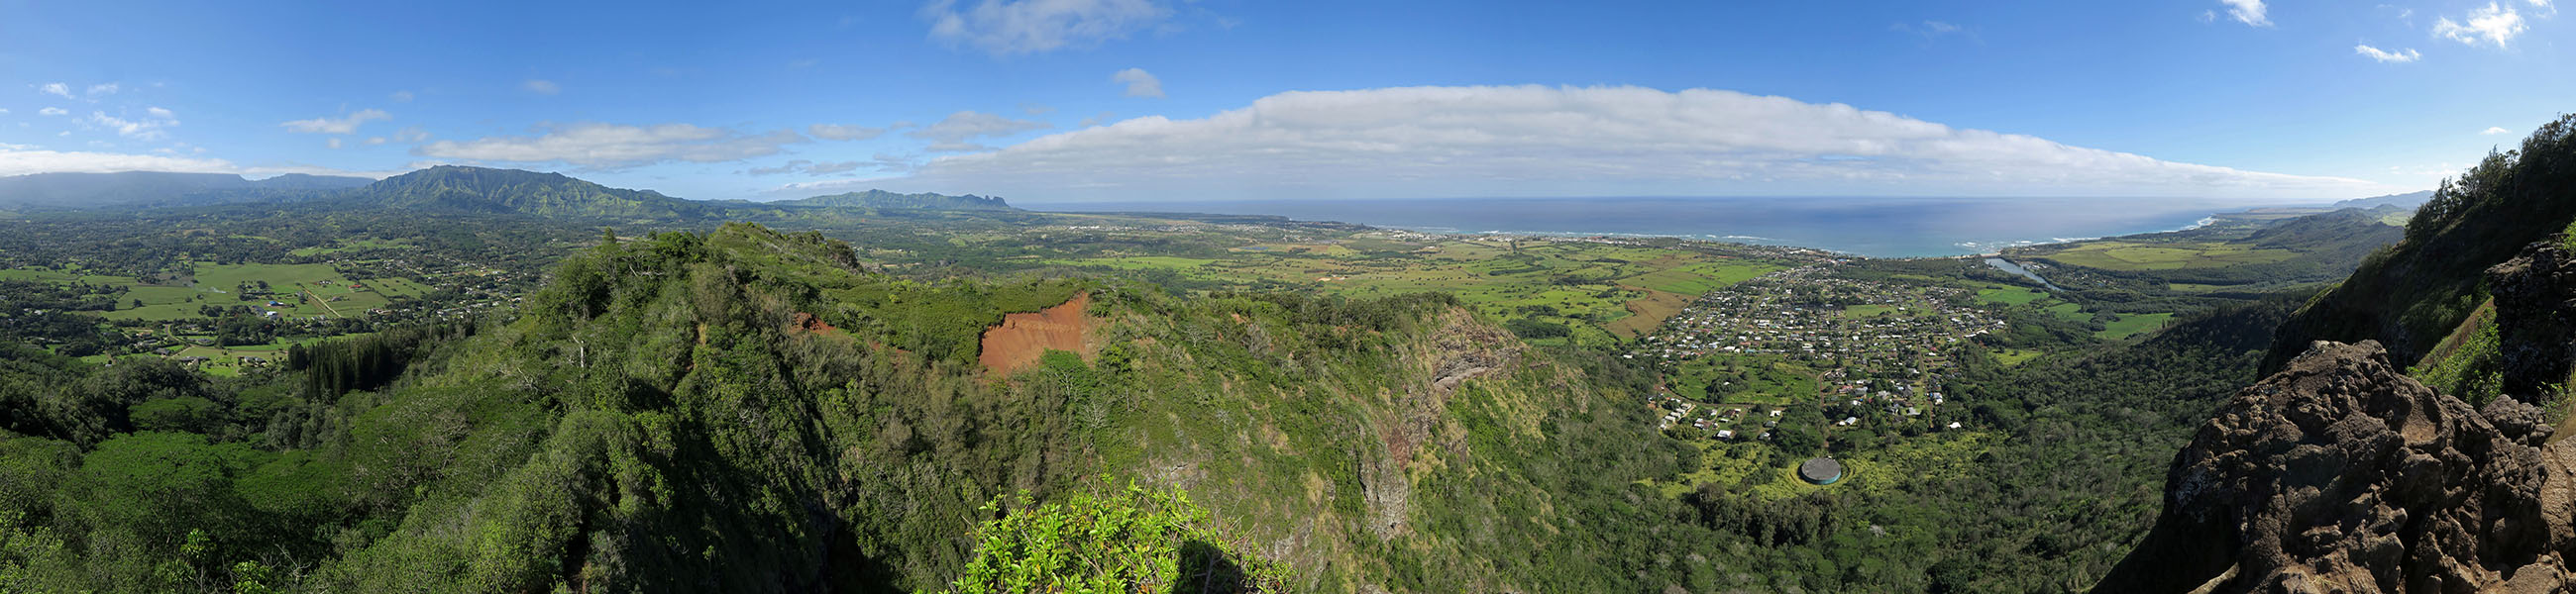 Nounou panorama [Nounou Mountain, Wailua, Kaua'i, Hawaii]